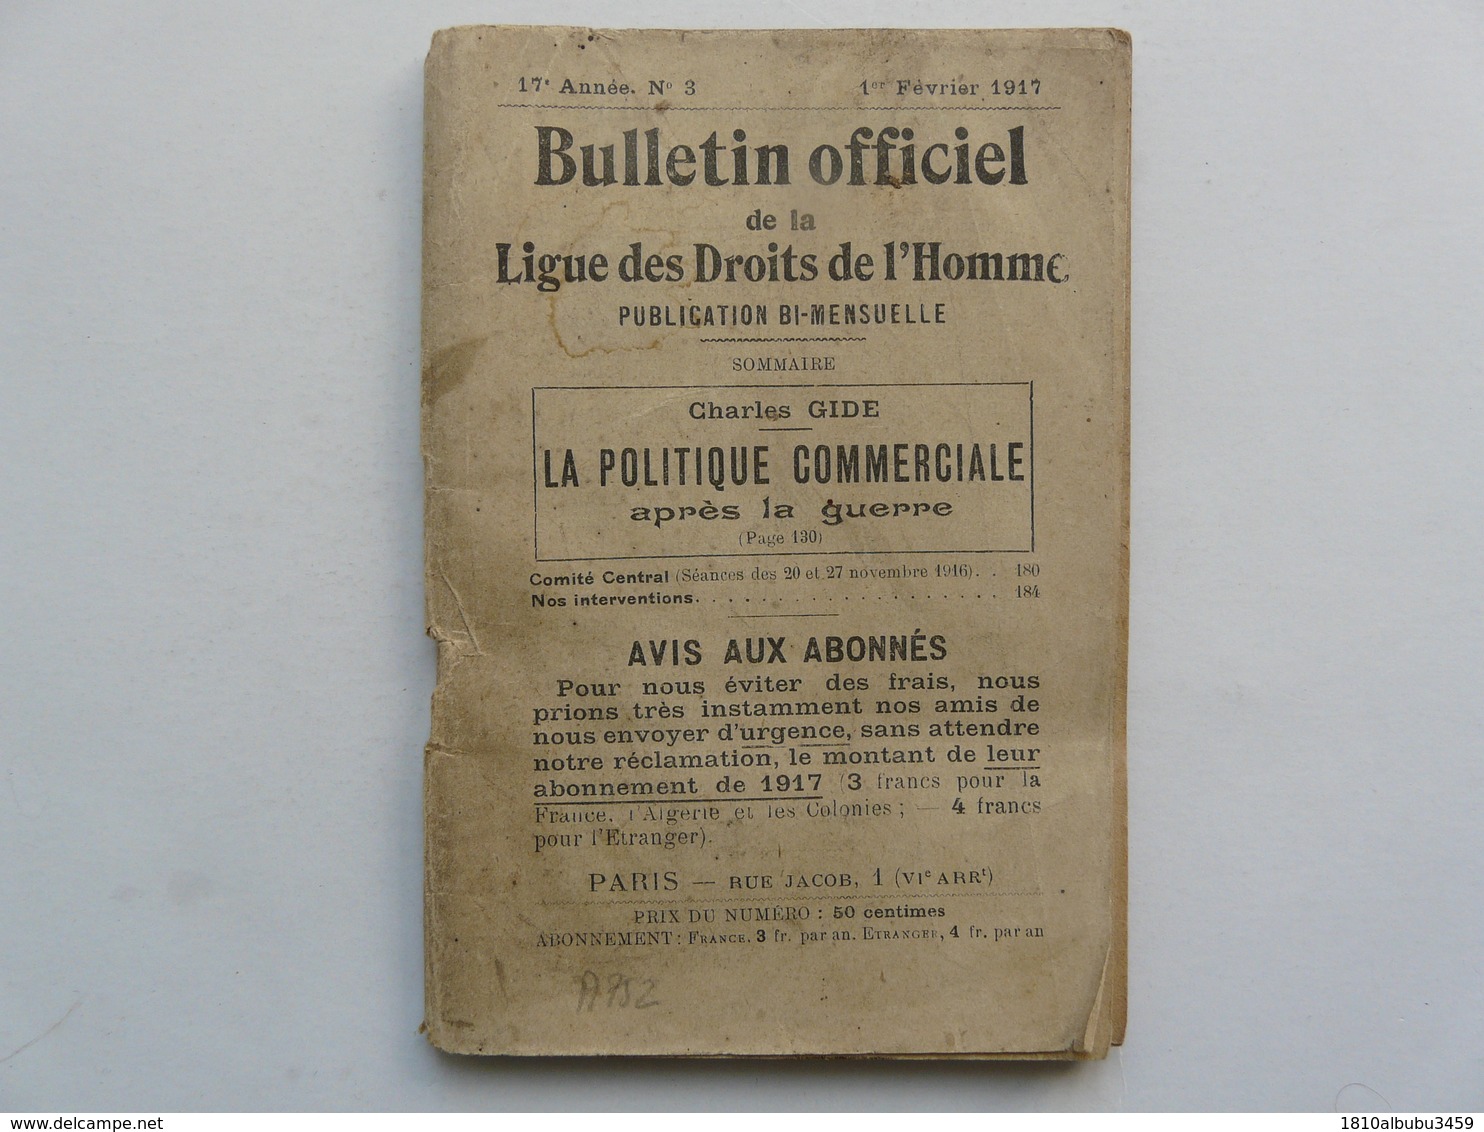 PUBLICATION BI-MENSUELLE - BULLETIN OFFICIEL DE LA LIGUE DES DROITS DE L'HOMME : 1er Février 1917 - Droit